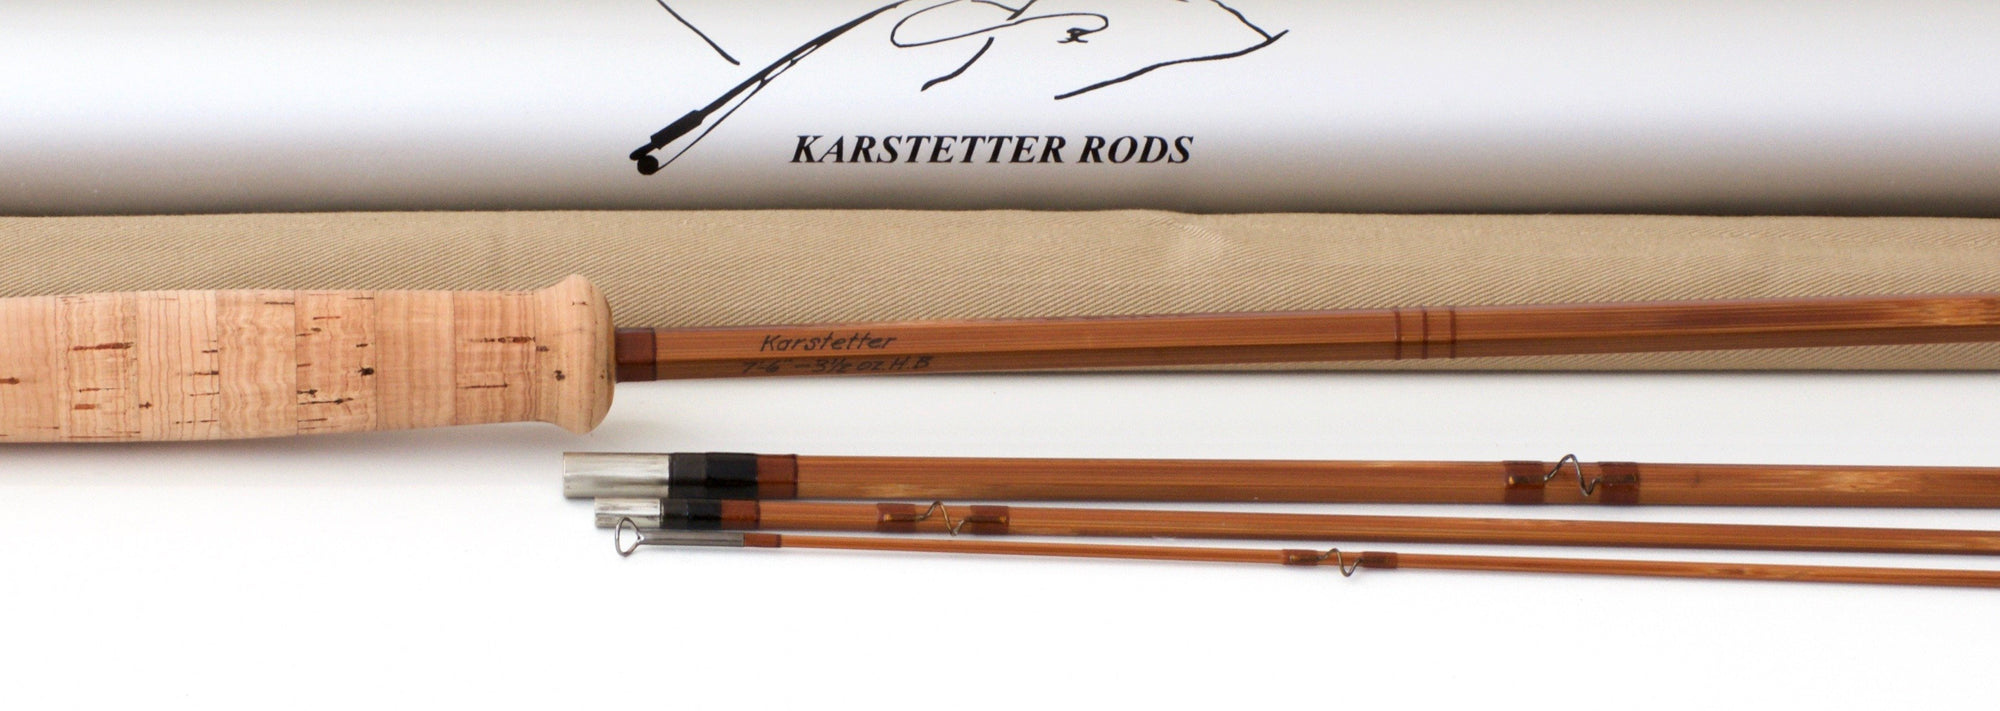 Karstetter, Marty - Hollow-Built Bamboo Rod 7'6 3/2 4-5wt 